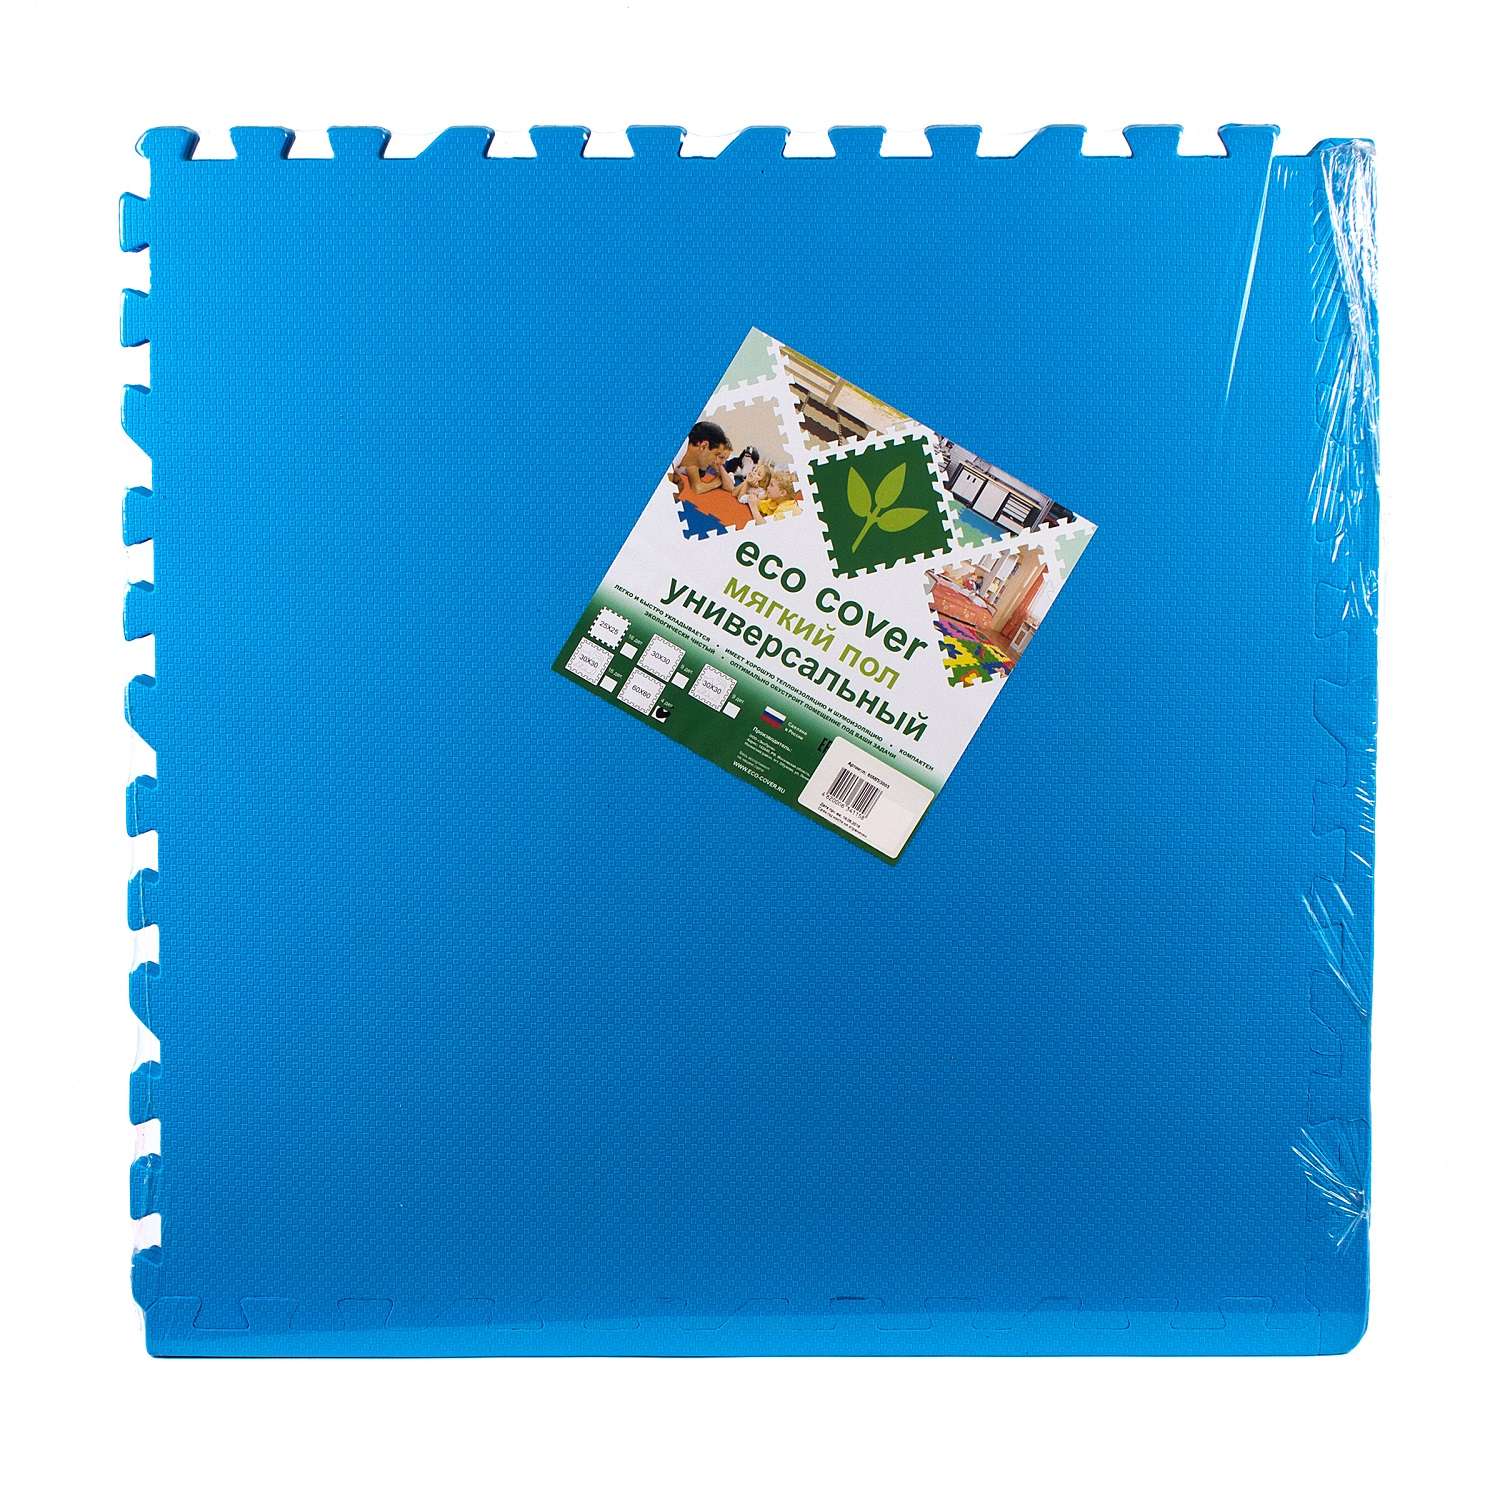 Развивающий детский коврик Eco cover игровой для ползания мягкий пол синий 60х60 - фото 1